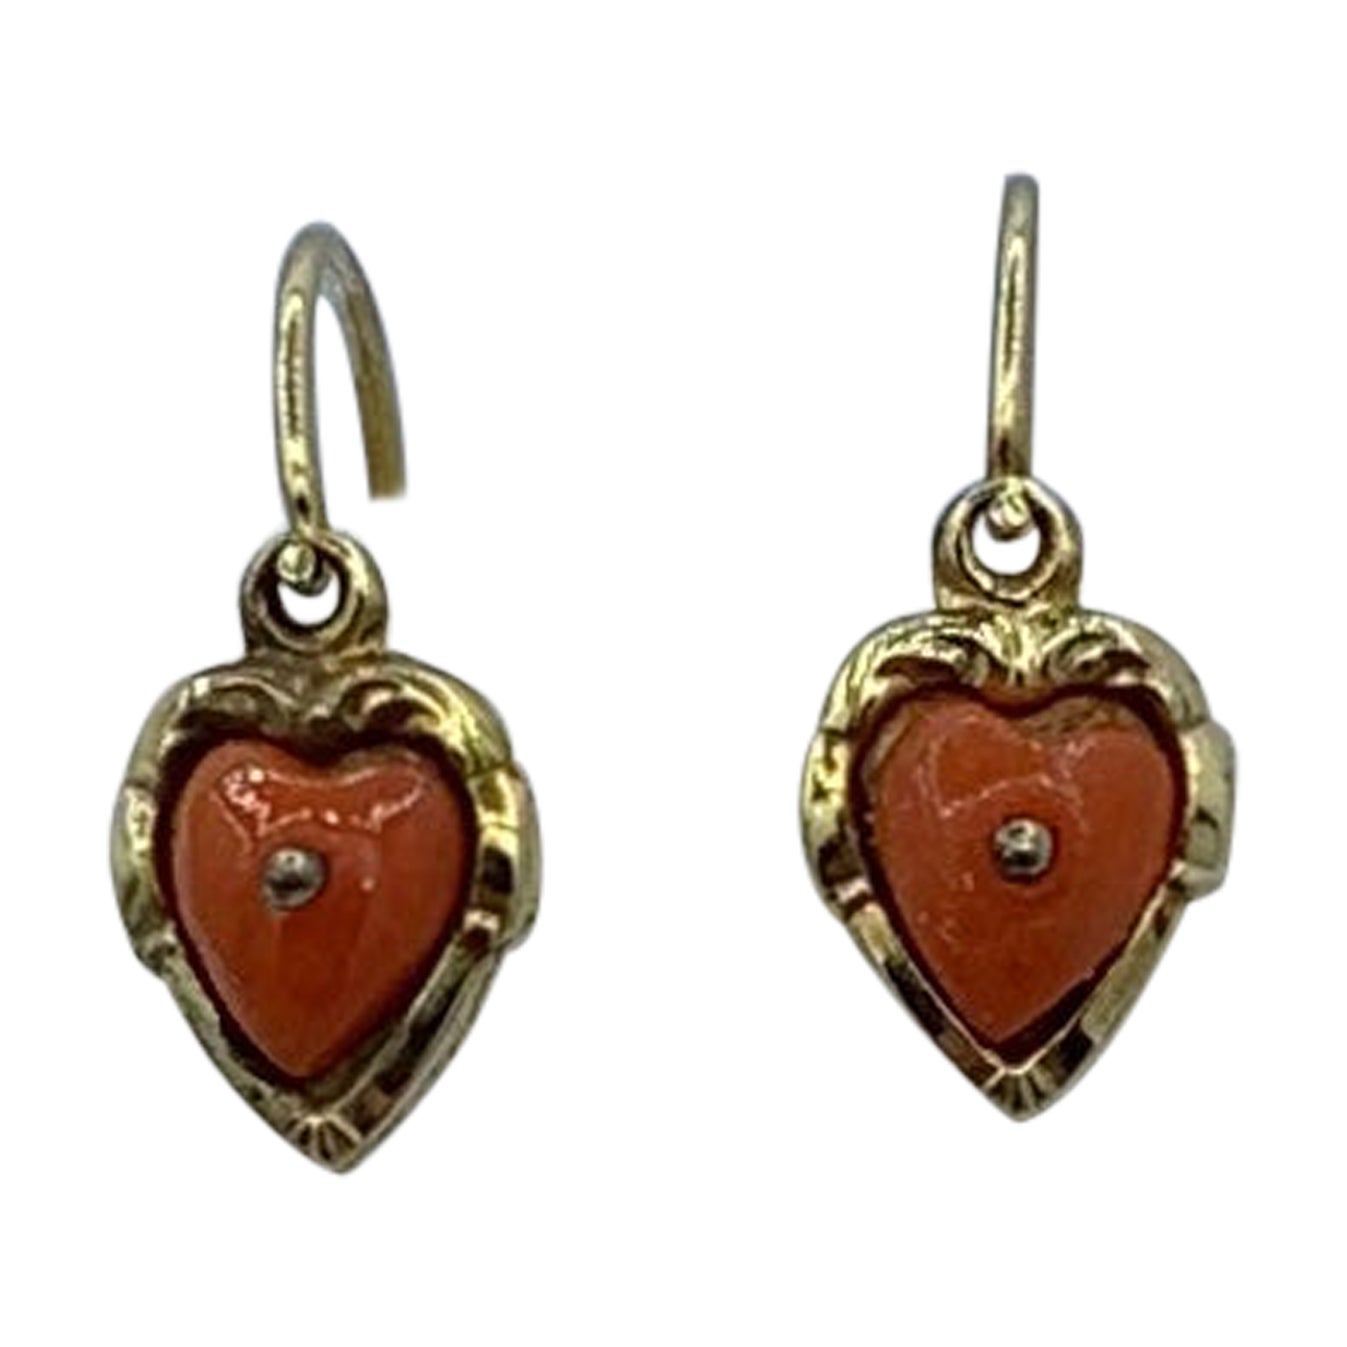 Victorian Coral Heart Earrings Dangle Drop Earrings Antique Gold